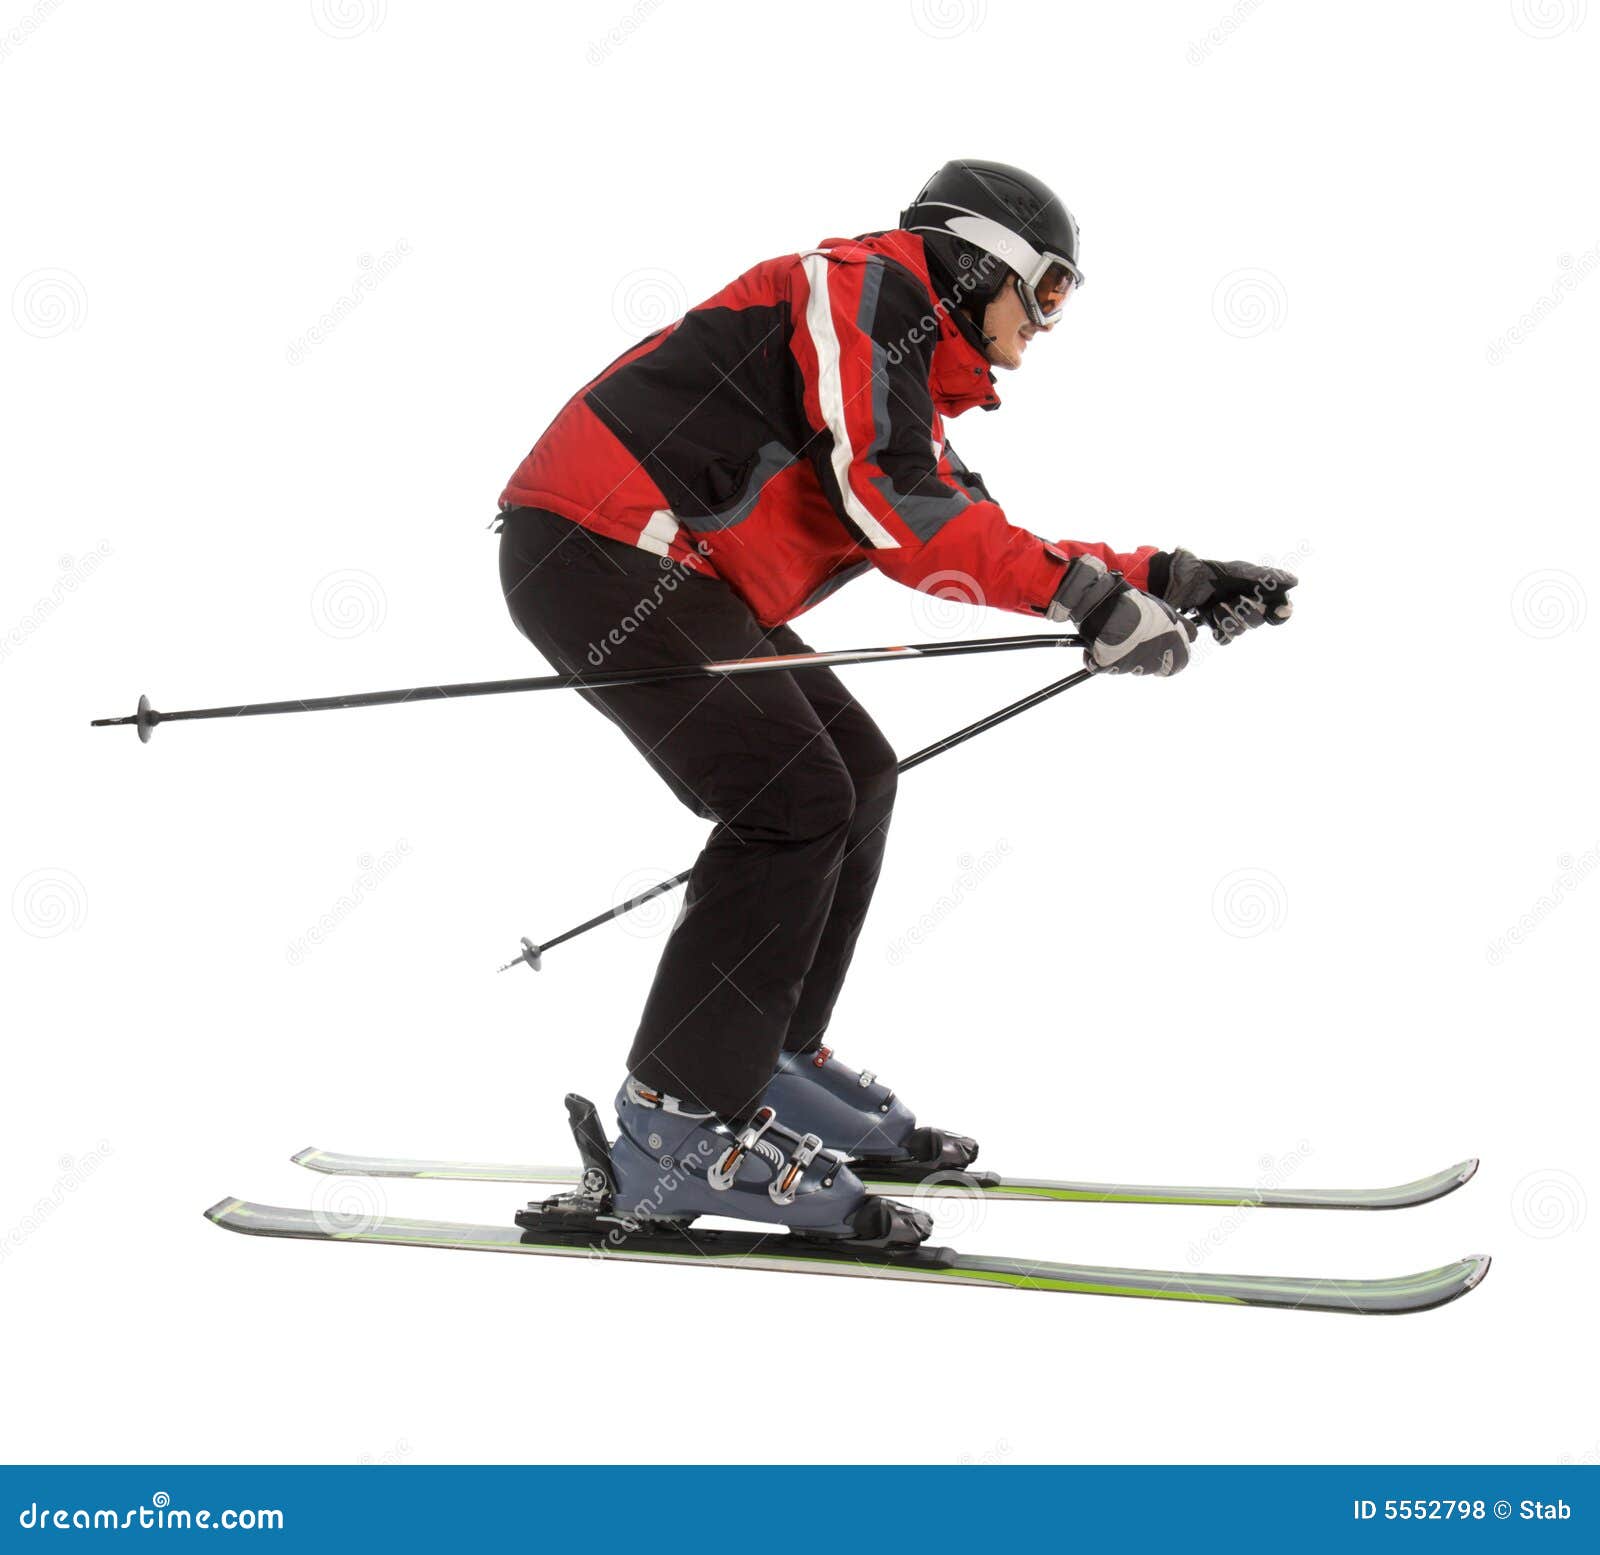 skier man in ski slalom pose